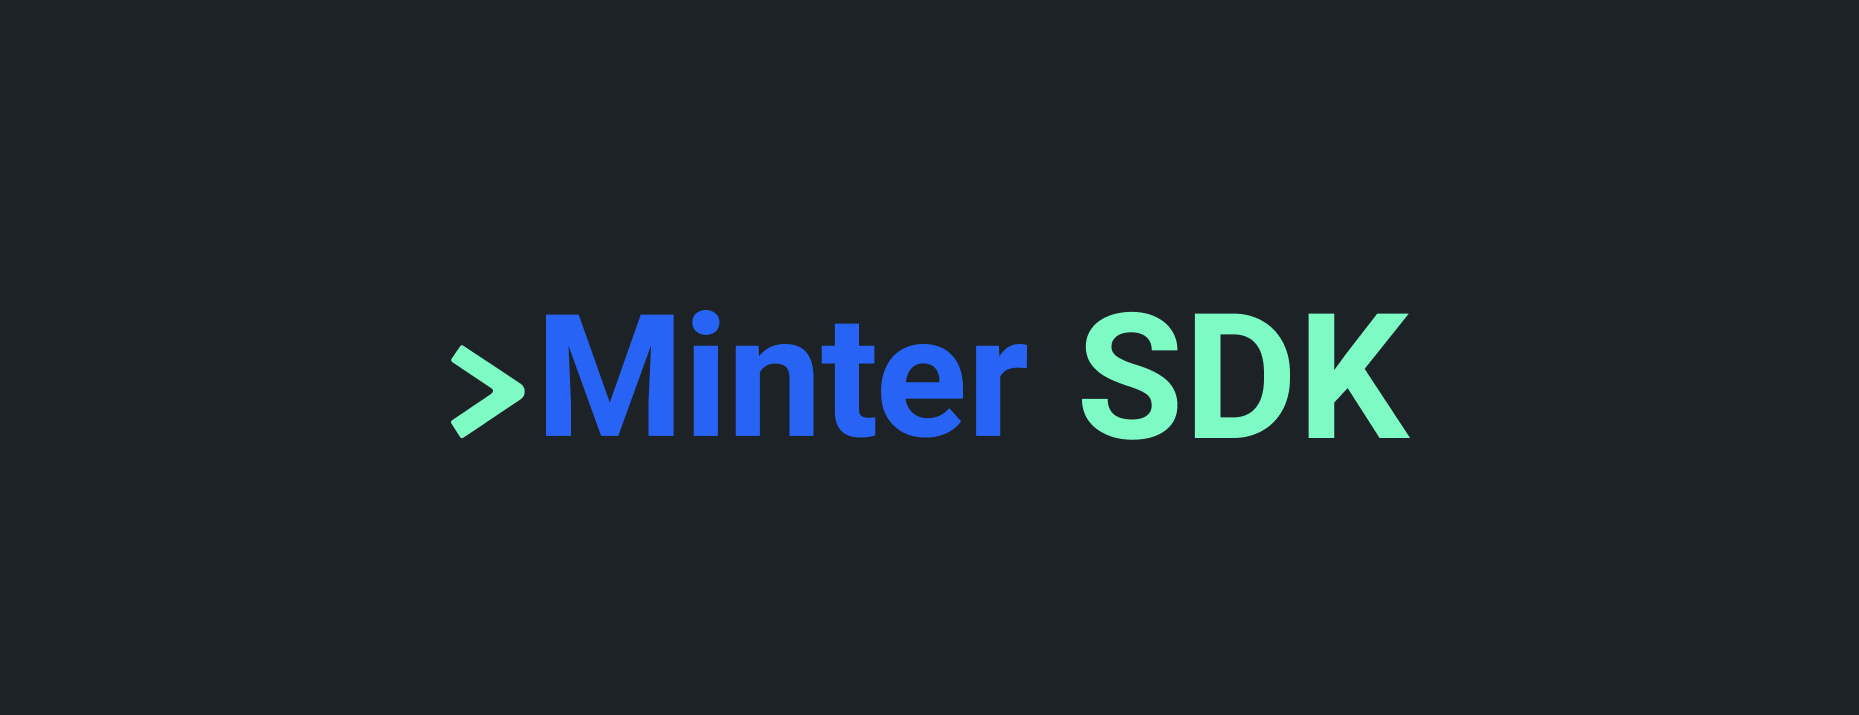 Minter SDK header